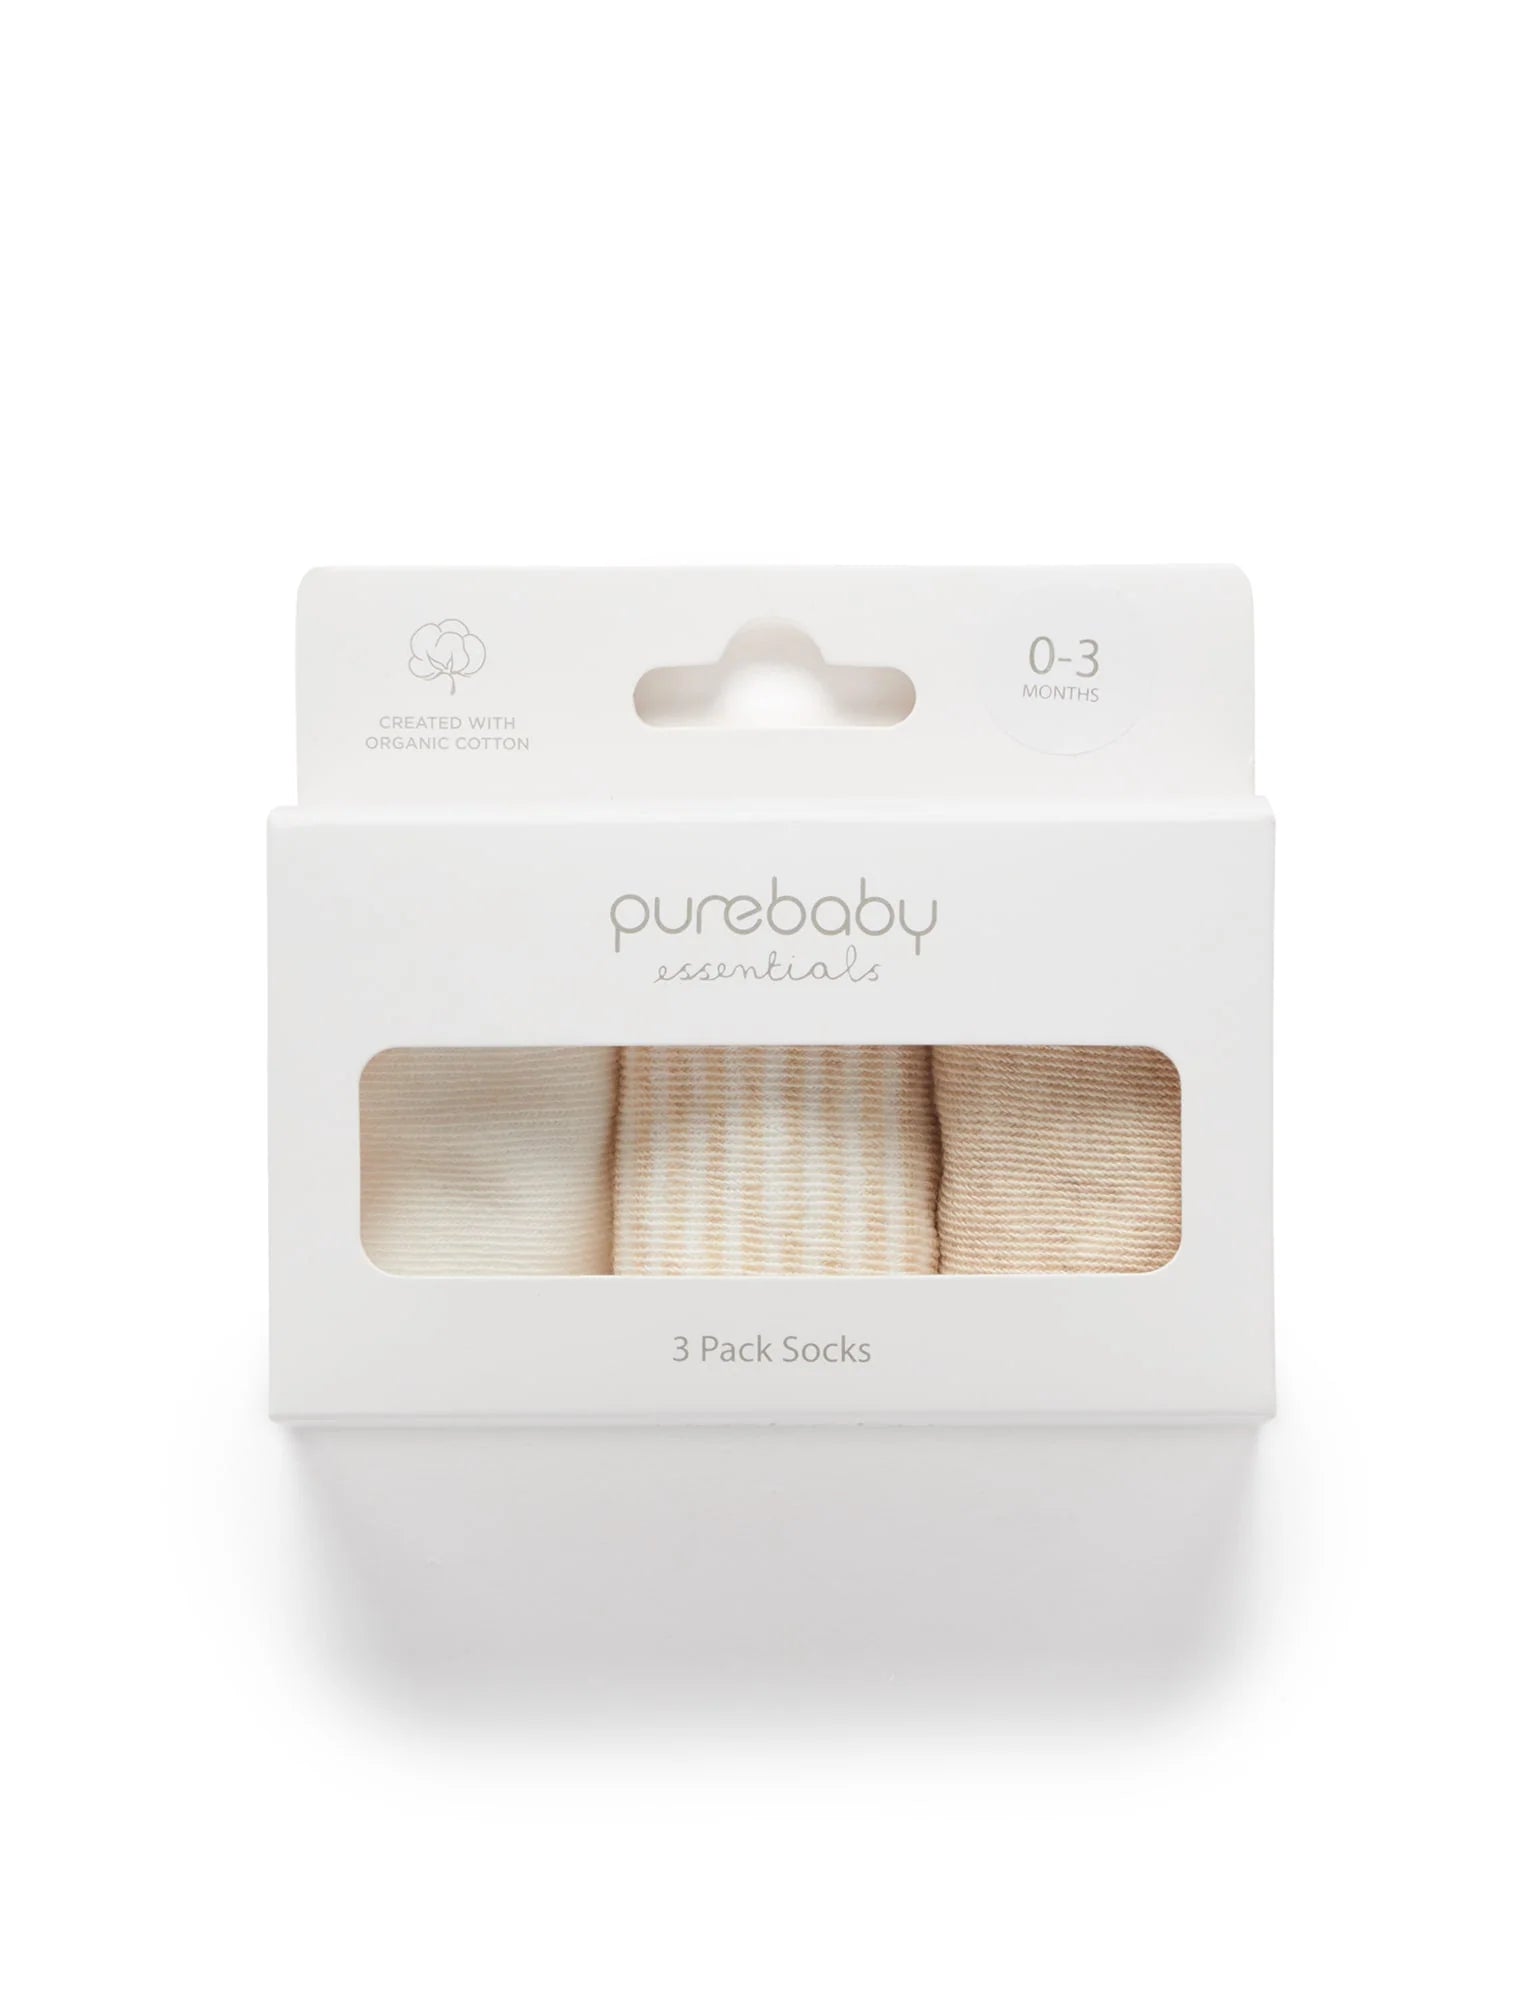 Purebaby 3 pack Socks - Vanilla